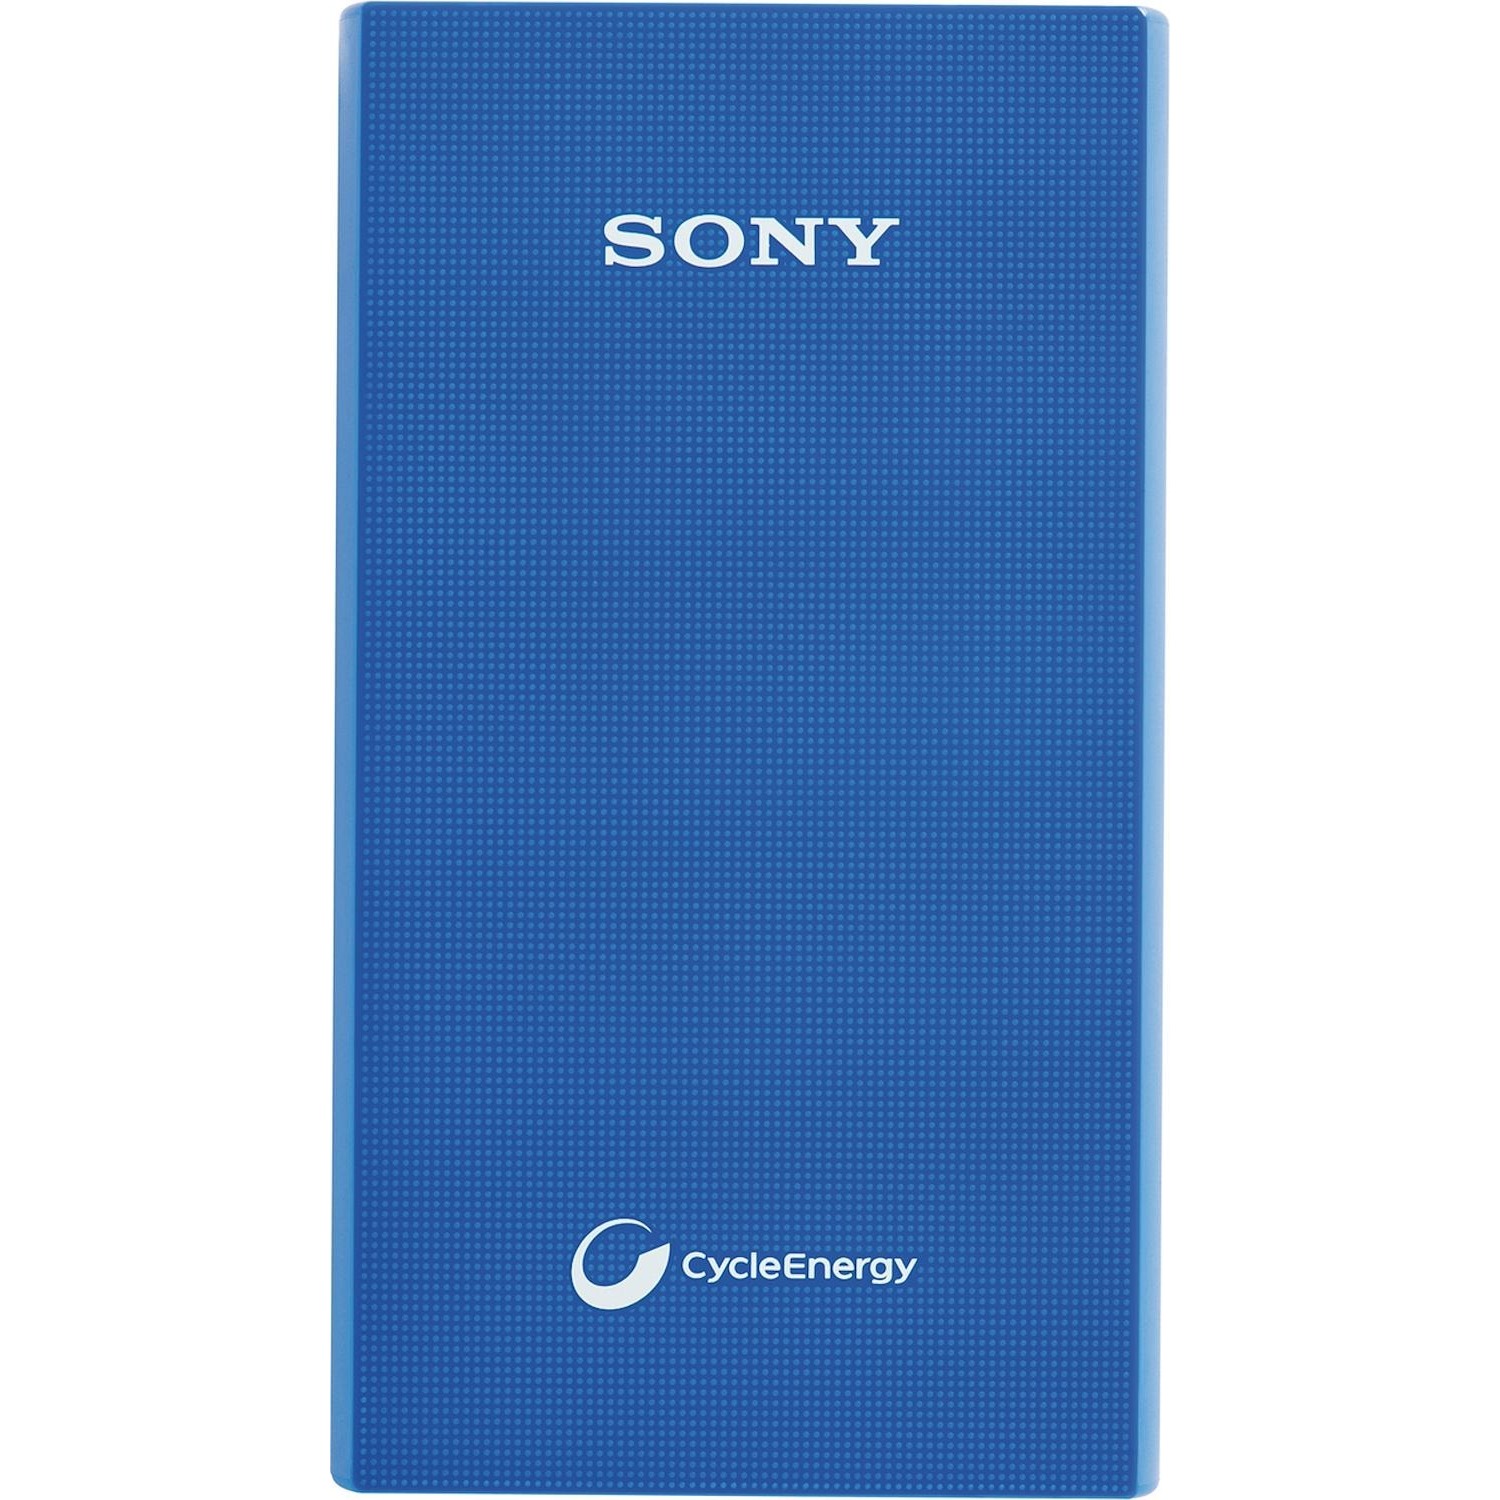 Immagine per Powerbank Sony 5800 mAh con cavo micro USB blu da DIMOStore